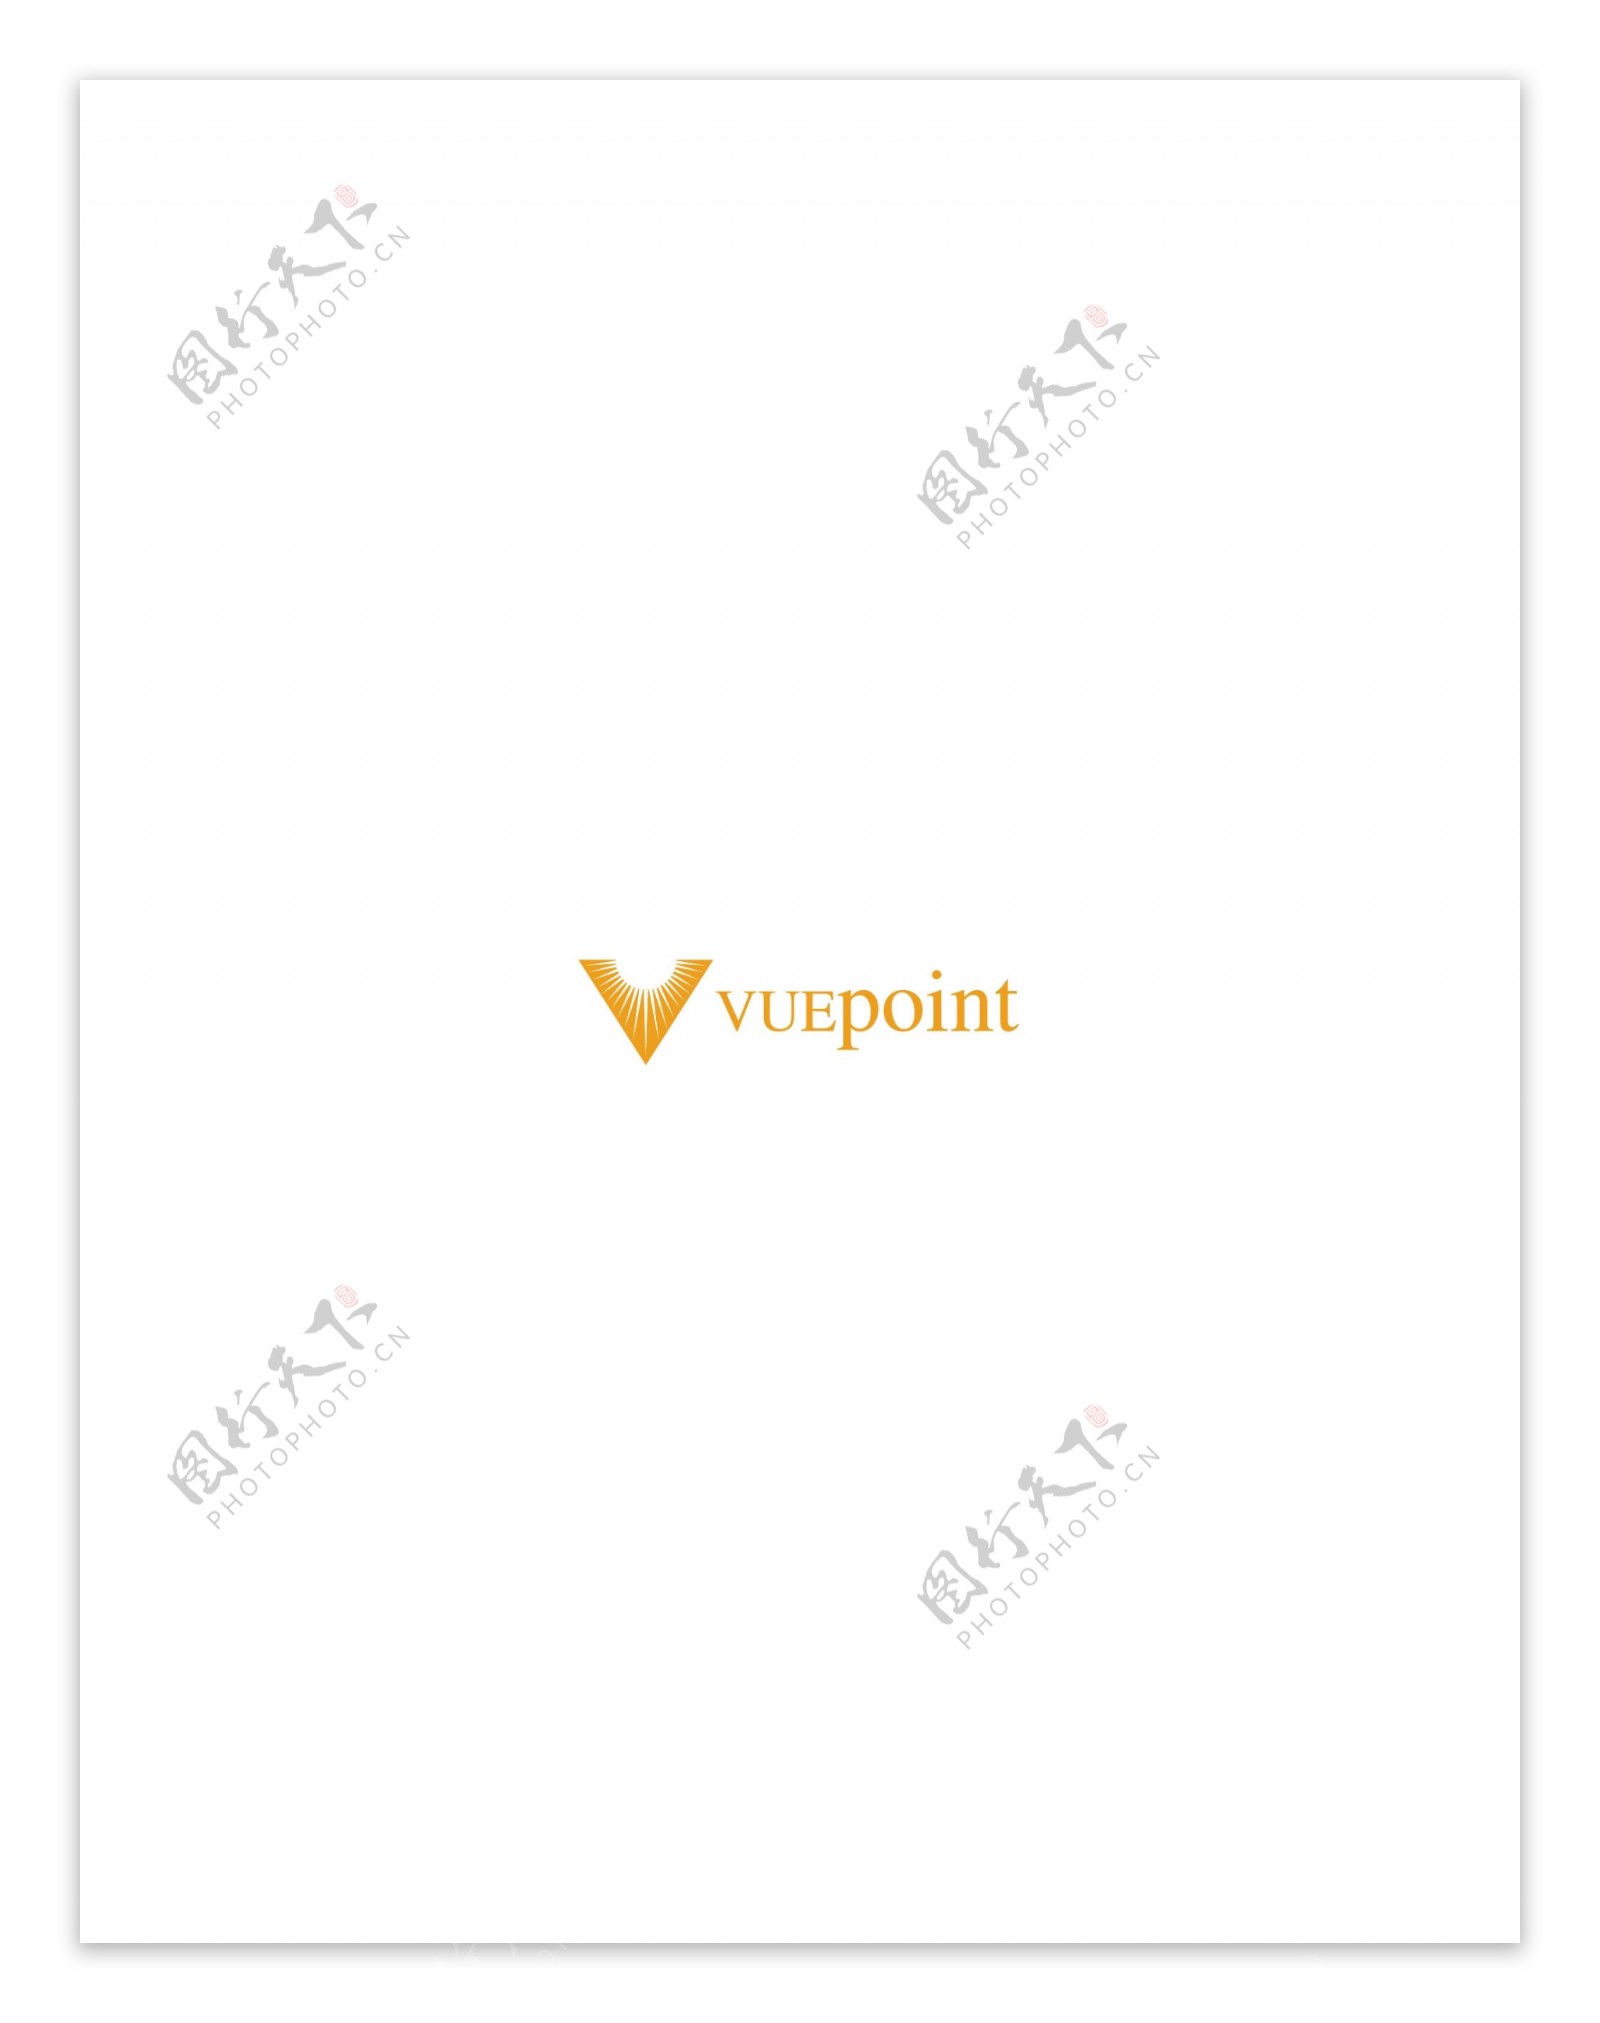 Vuepointlogo设计欣赏国外知名公司标志范例Vuepoint下载标志设计欣赏